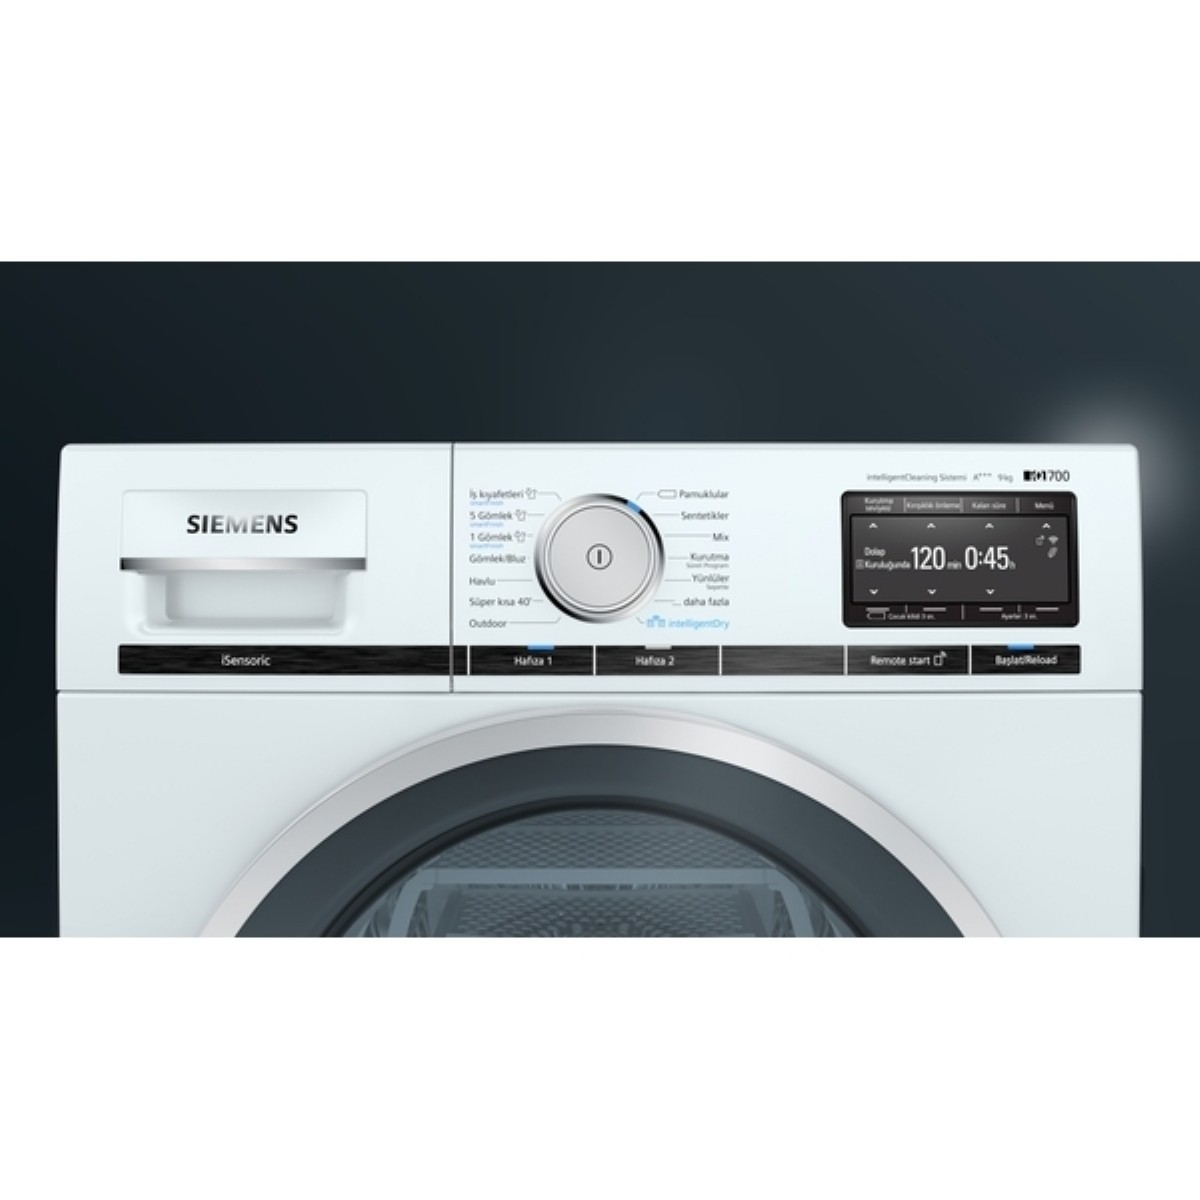 Çamaşır Kurutma Makineleri | Siemens WT47XEH0TR A+++ 9 kg Çamaşır Kurutma Makinesi (Home Connect) | WT47XEH0TR | WT47XEH0TR, wt47xeh0tr, Siemens WT47XEH0TR A+++ 9 kg Çamaşır Kurutma Makinesi | 